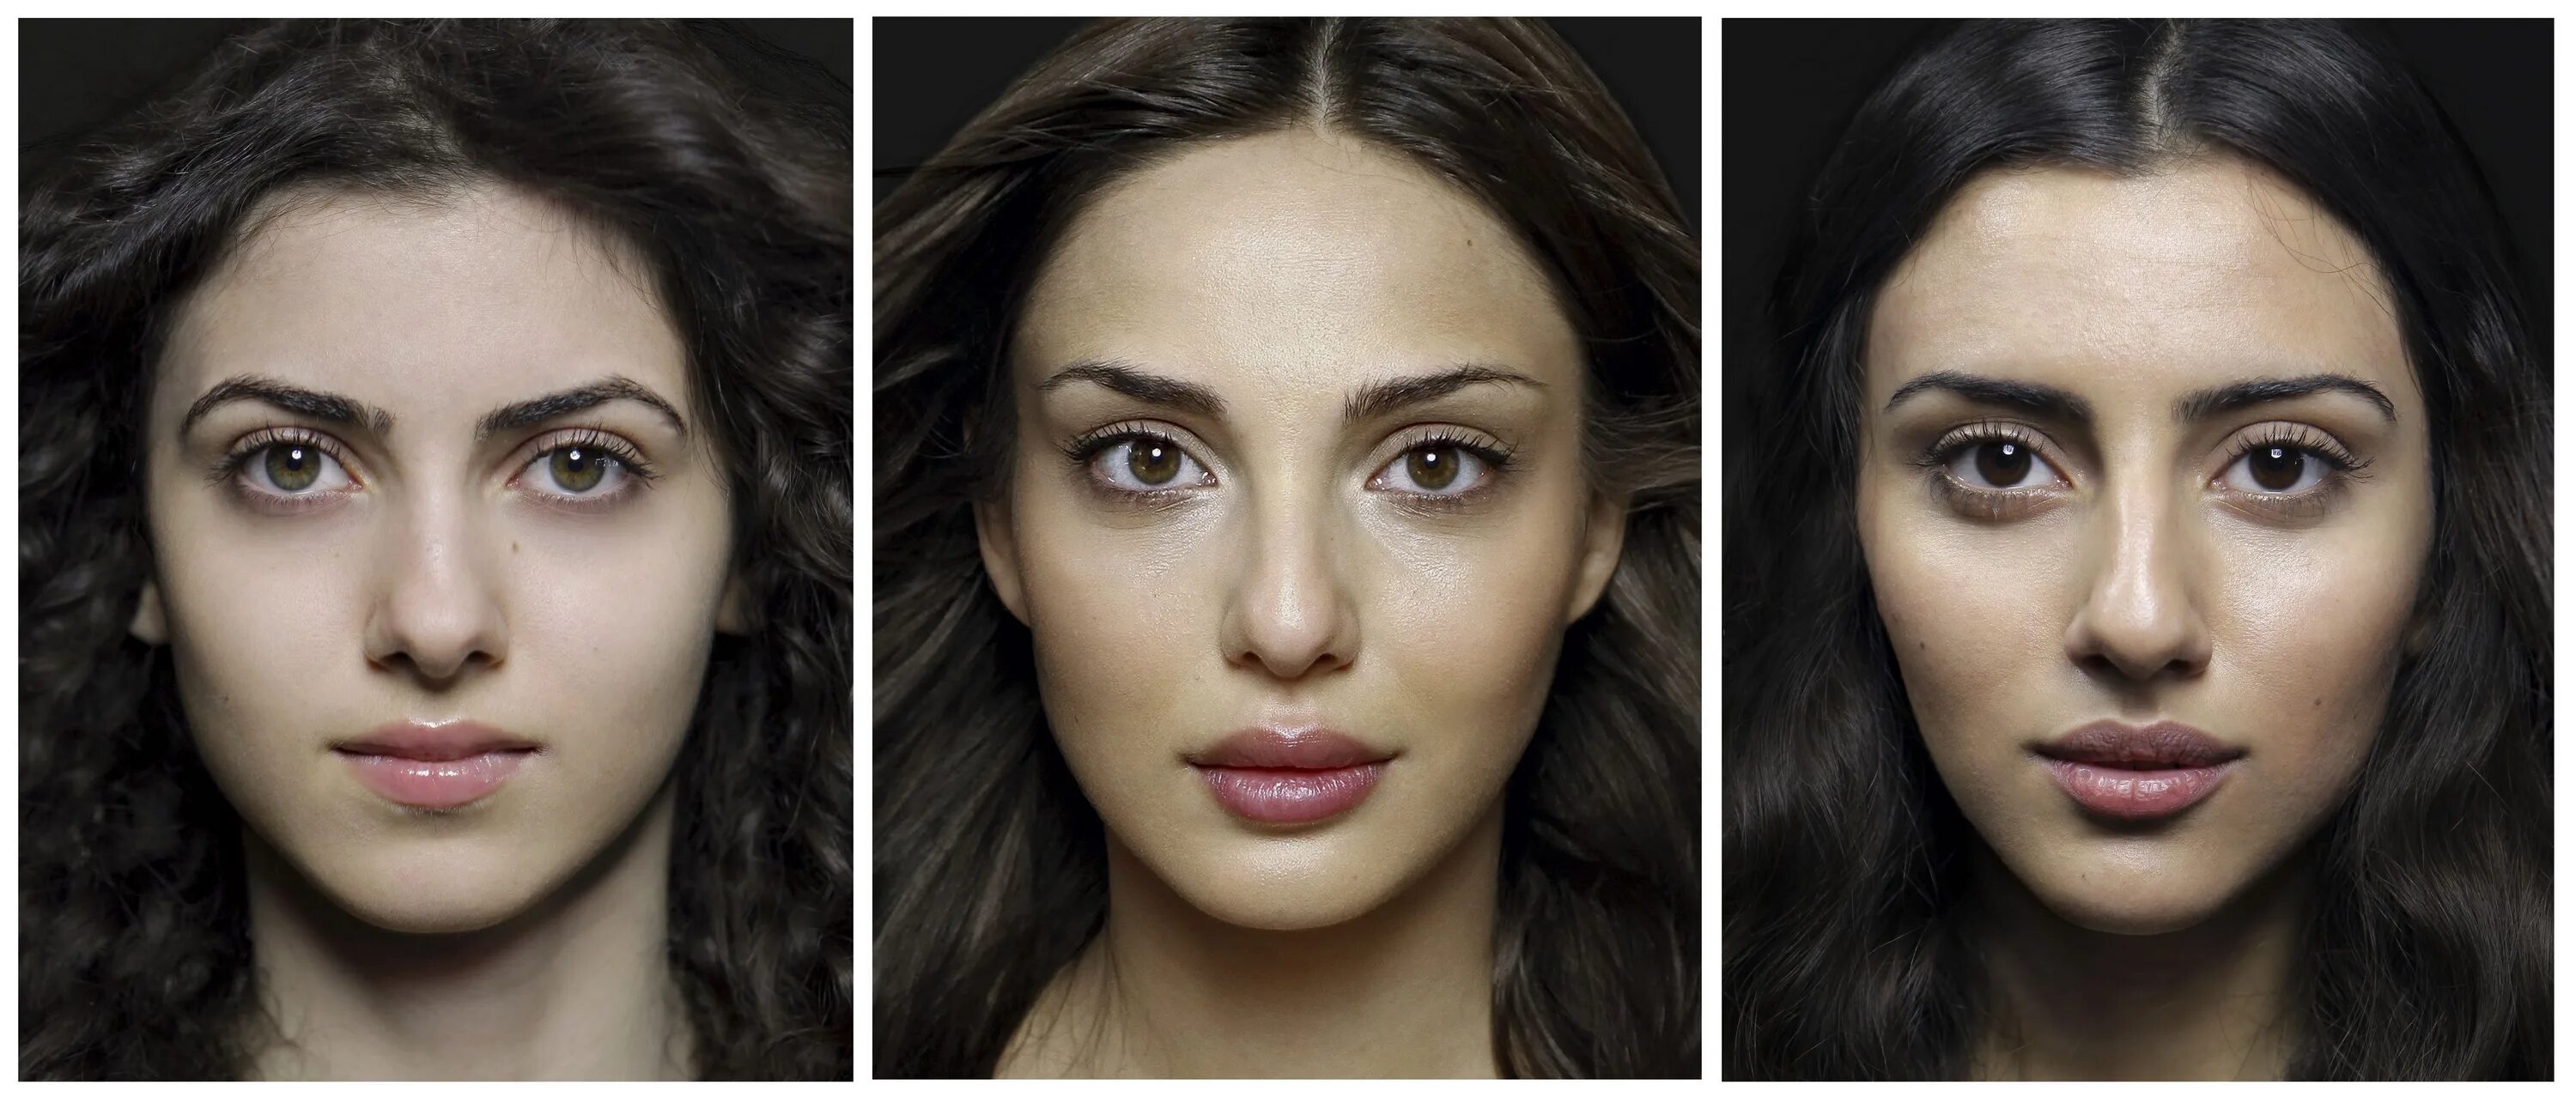 Внешне доступный. Национальные Истоки красоты армянка. Внешность девушек разных национальностей. Усредненный портрет. Разные лица женщин.